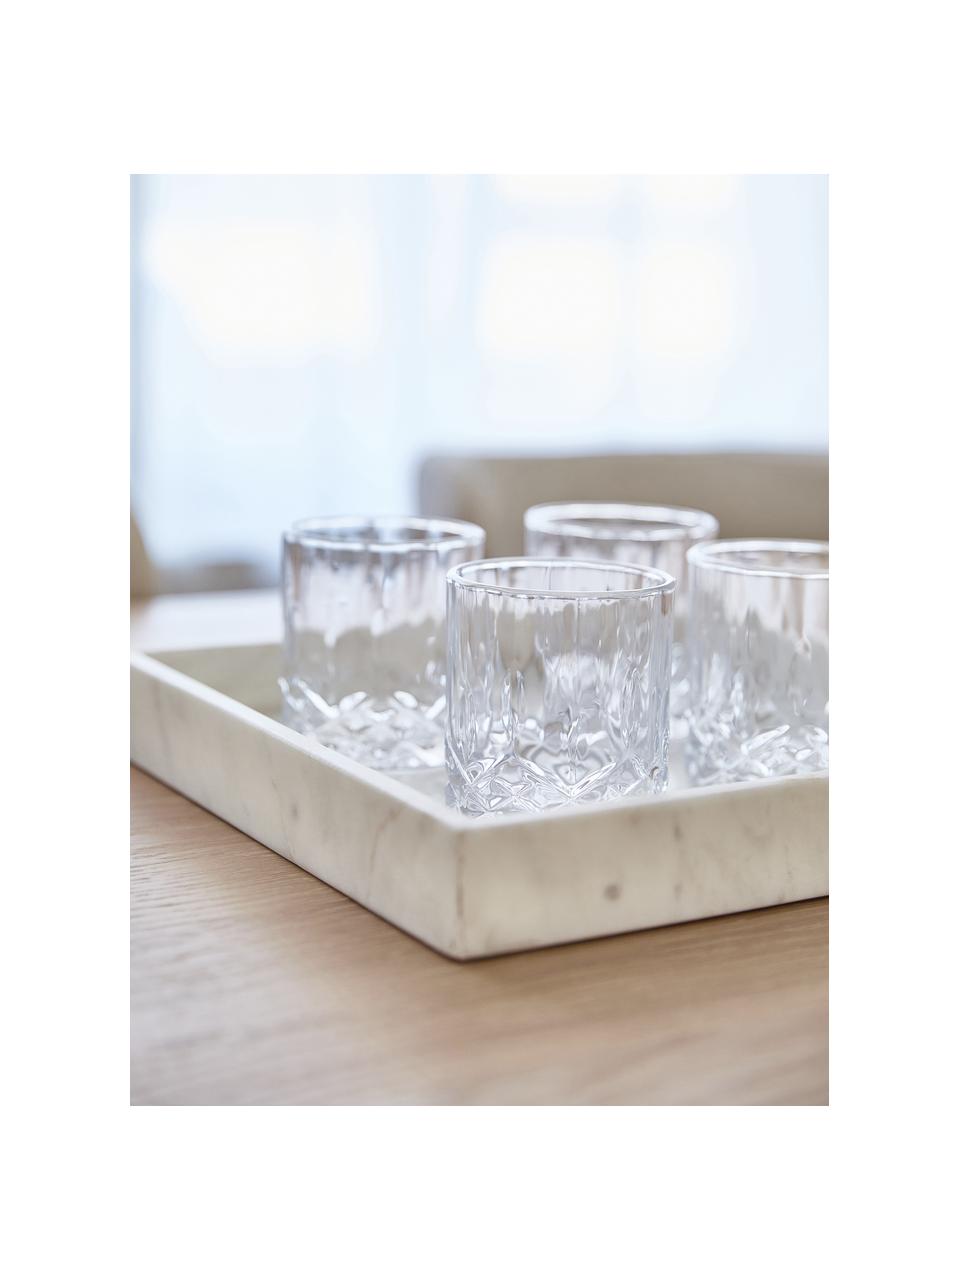 Bicchiere con struttura rilievo in cristallo George 4 pz, Vetro, Trasparente, Ø 8 x Alt. 10 cm, 310 ml